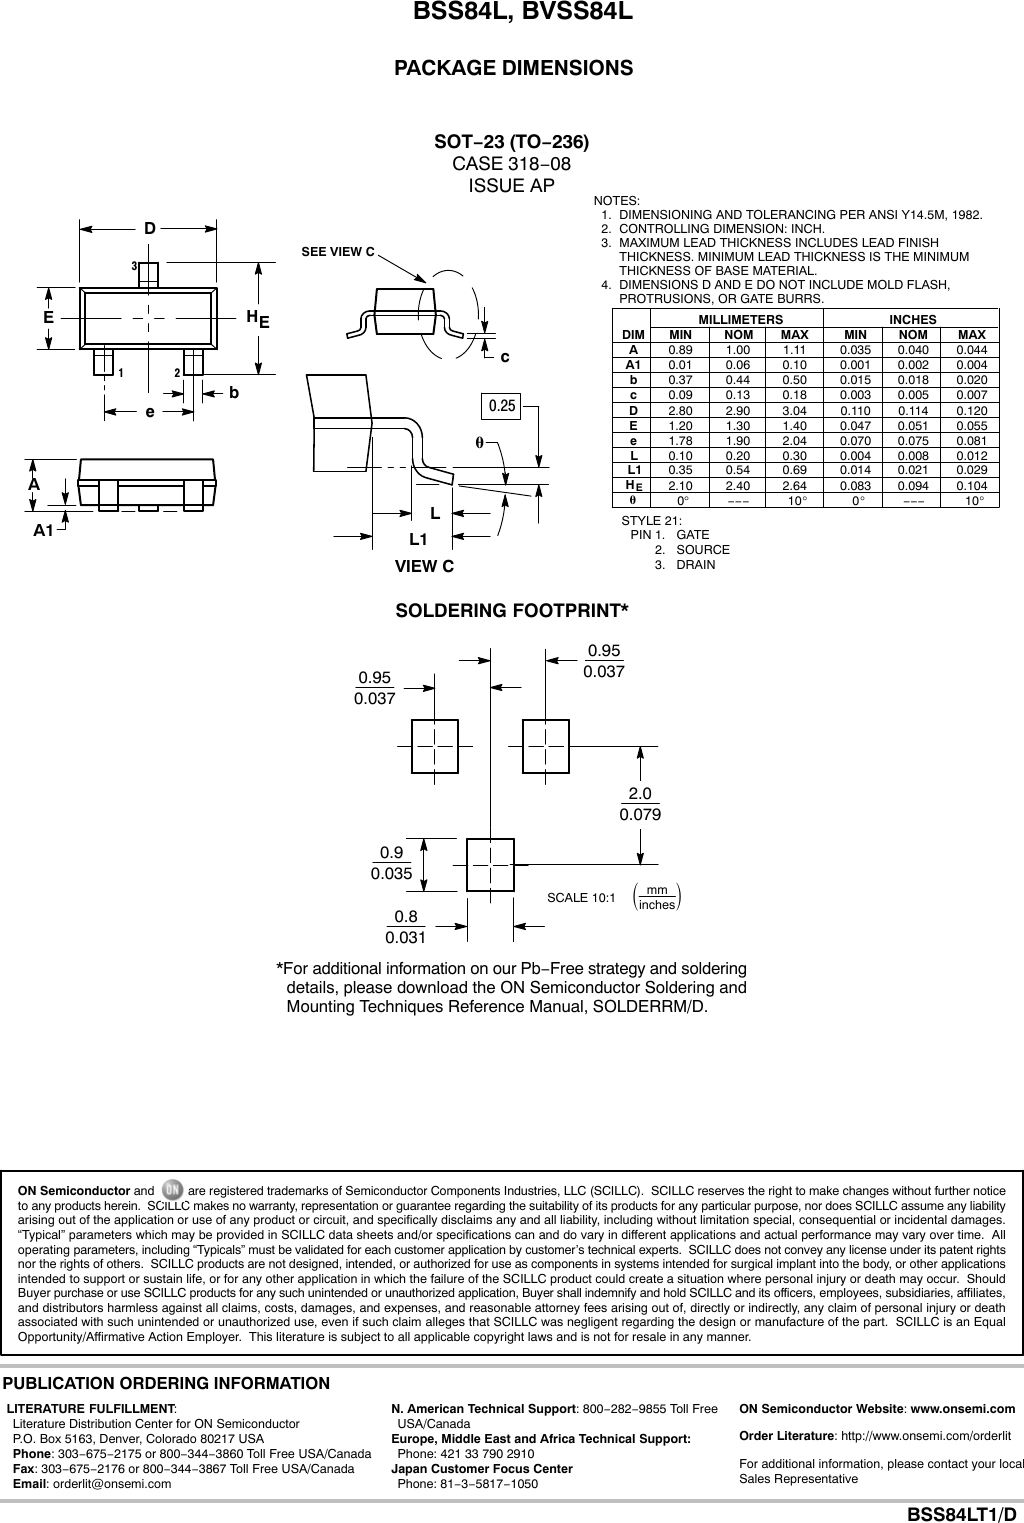 Page 4 of 5 - BSS84L, BVSS84L - Datasheet. Www.s-manuals.com. R8 On